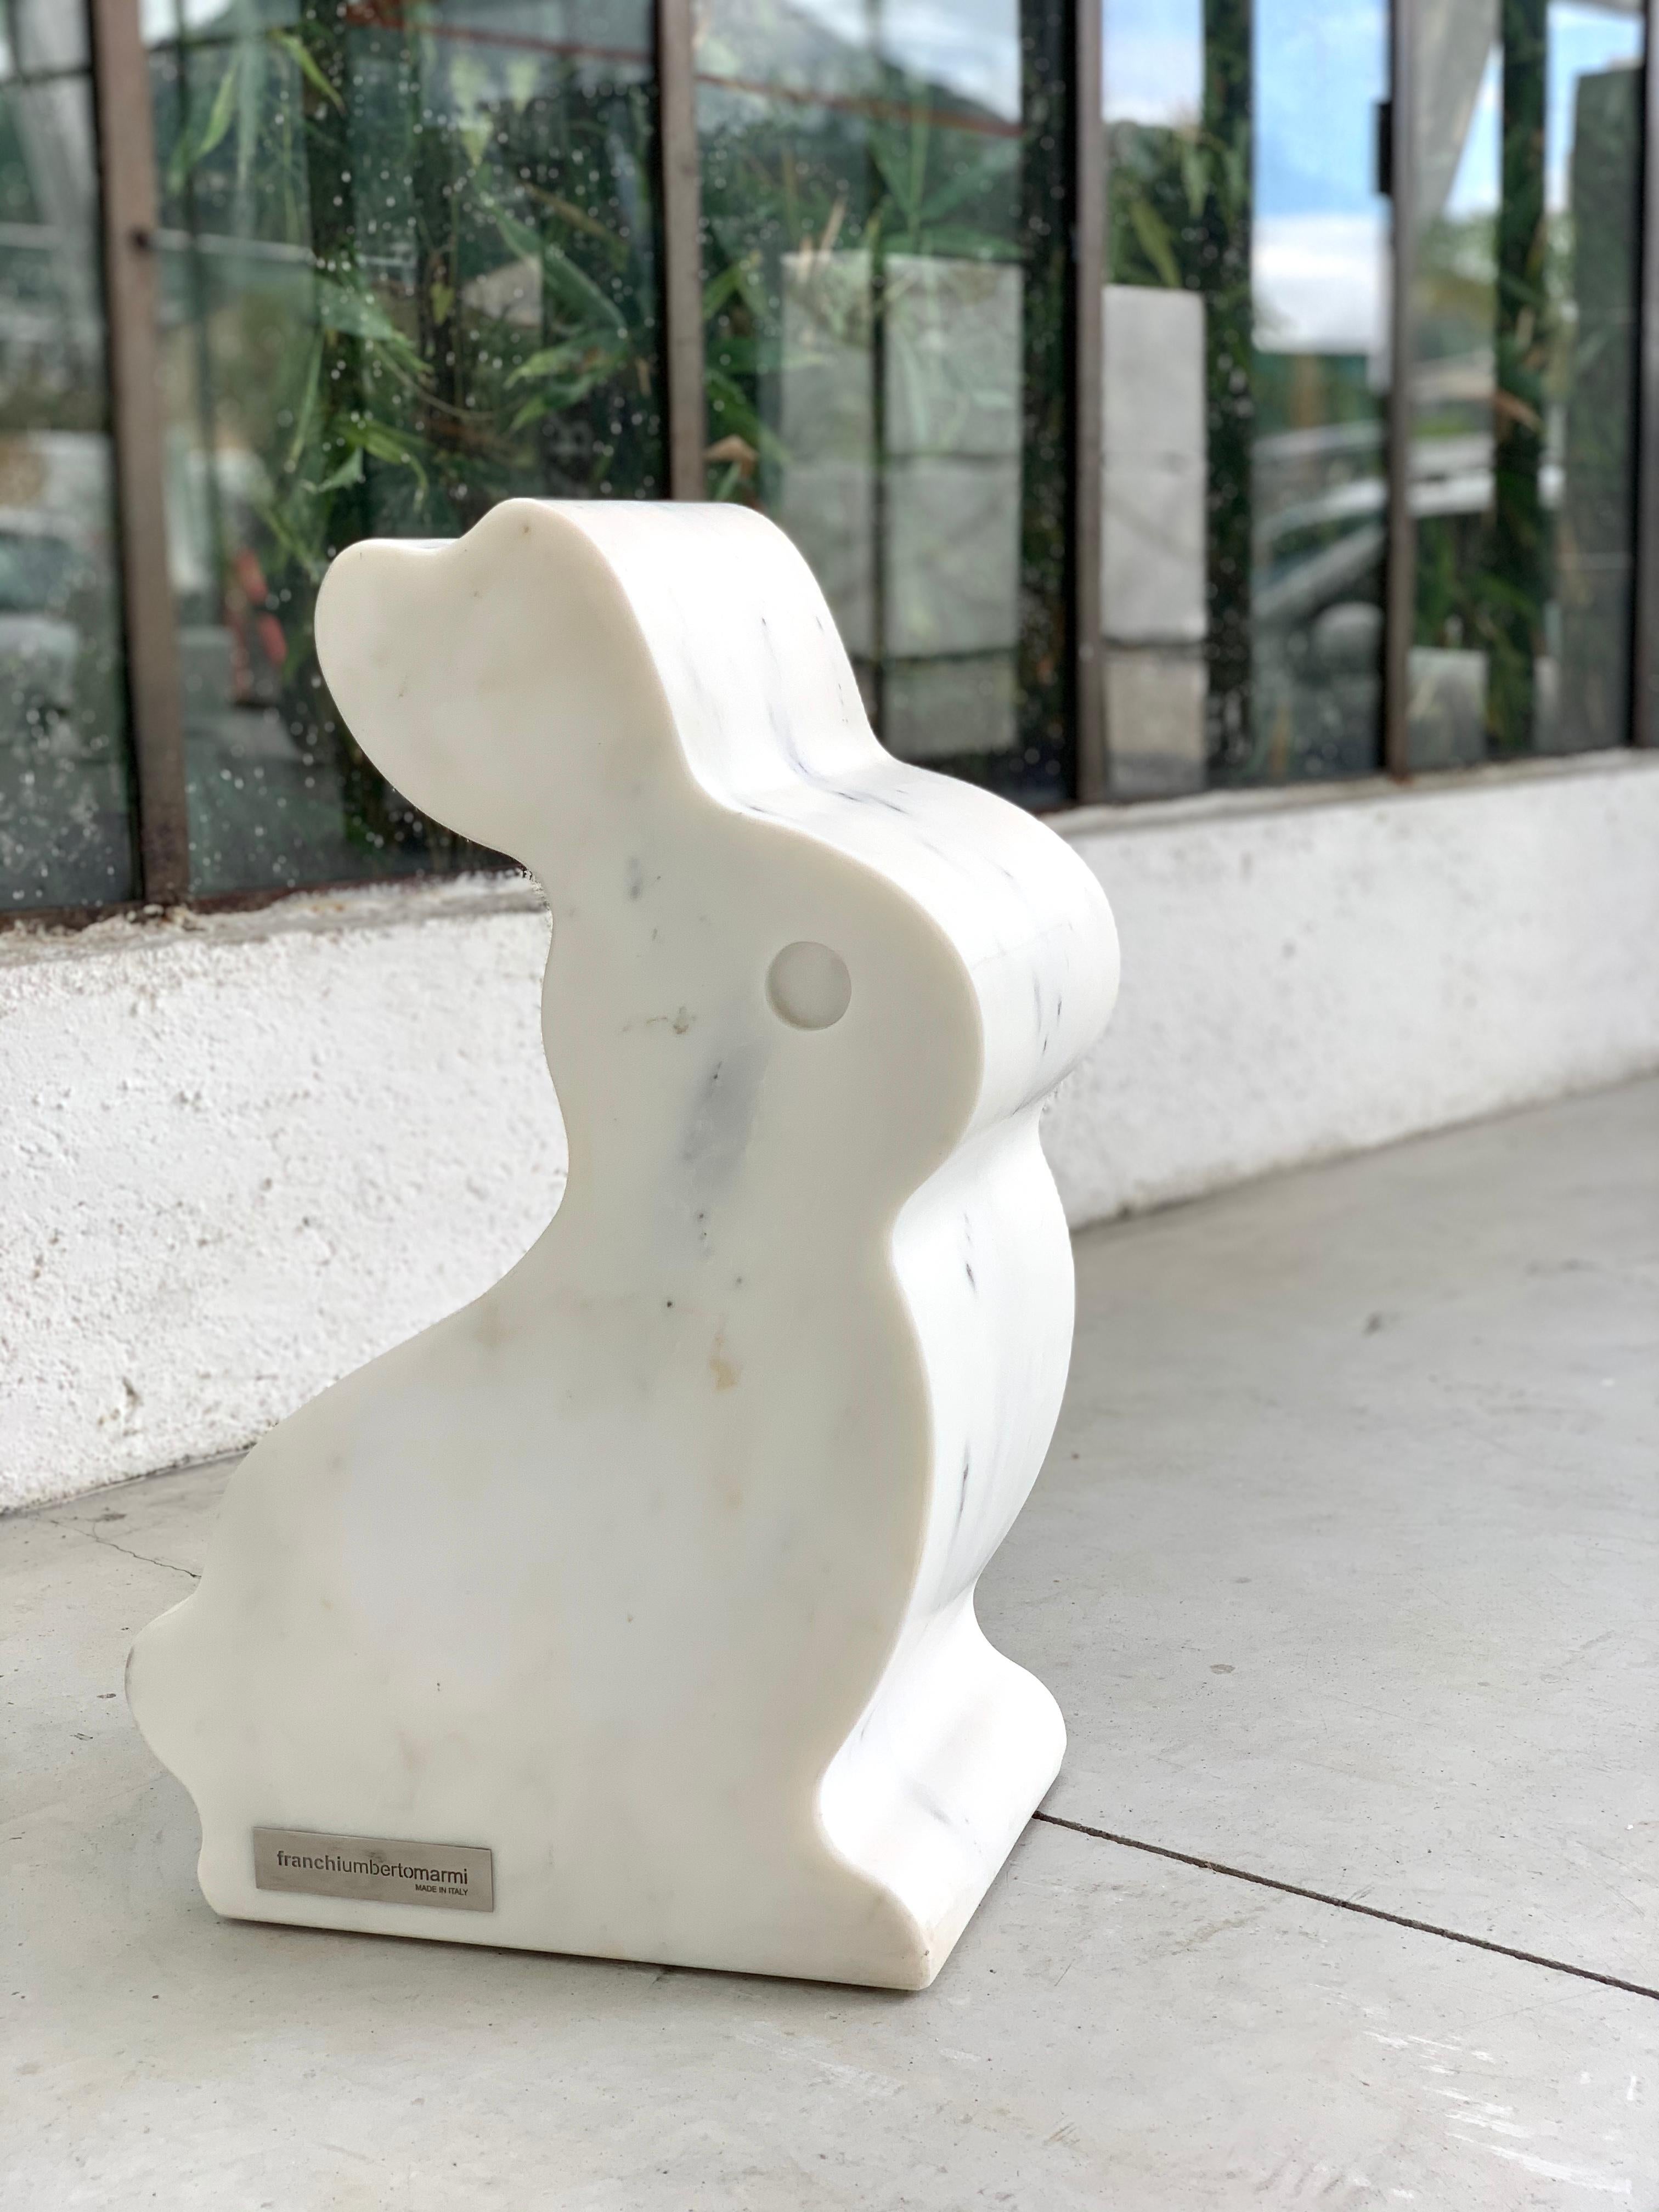 Kaninchen- ist Teil unserer Marmortierfamilie, die in Carrara/Italien hergestellt wird. Ob allein oder in Begleitung, es ist auf jeden Fall ein Blickfang!
Sein spezielles Material, der Paonazzo-Marmor, weist eine wunderbare Farbpalette auf, die von